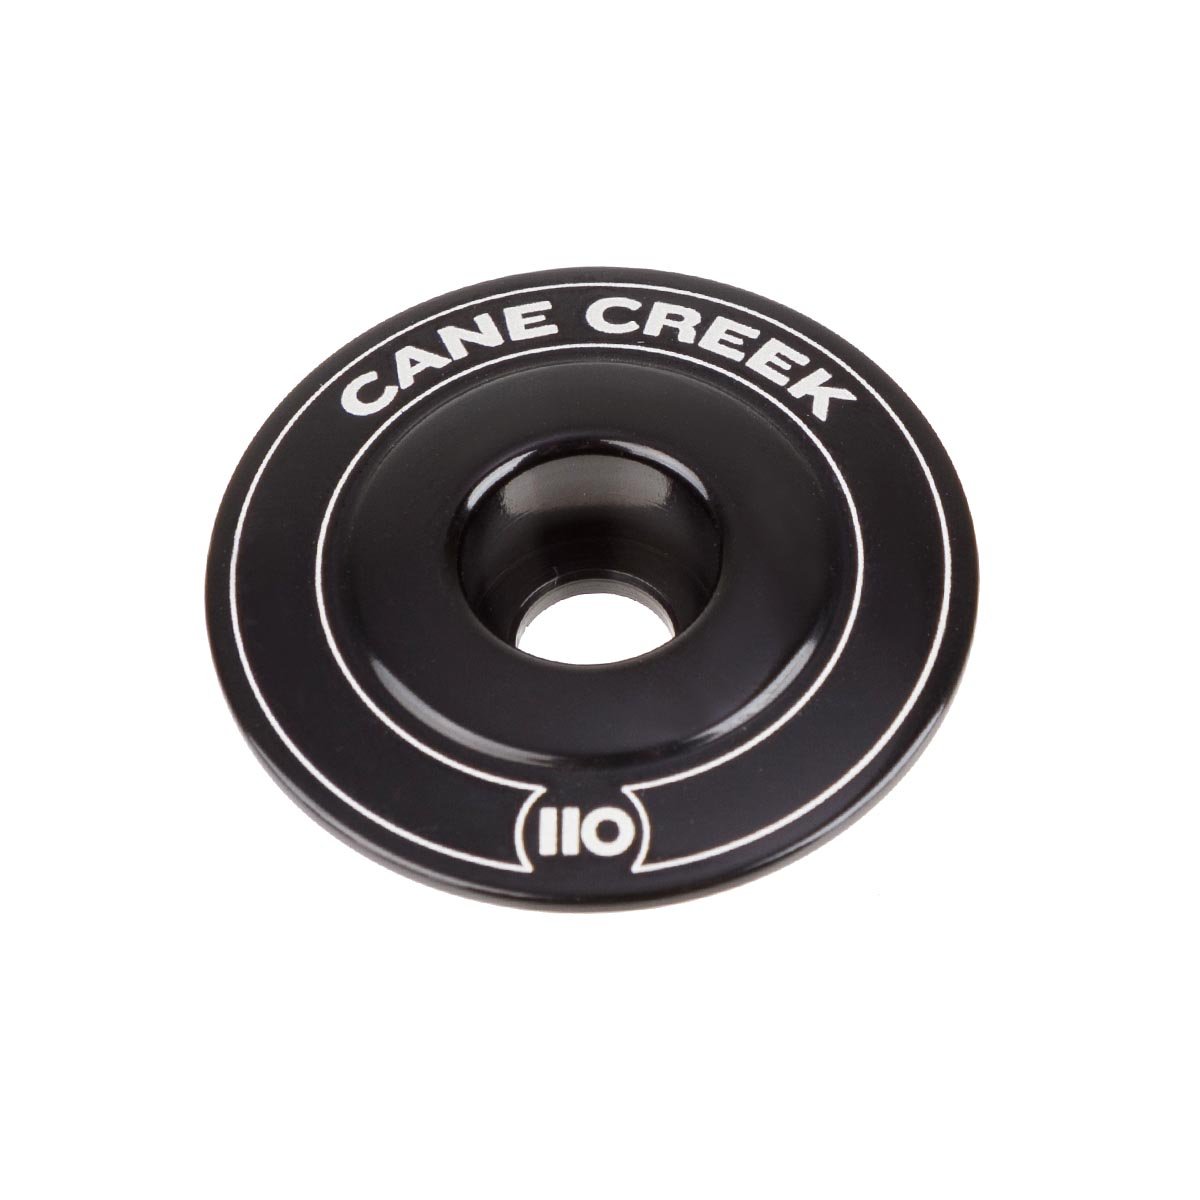 Cane Creek Bouchon de Potence 110 Noir, Aluminium, 1 1/8 Pouces